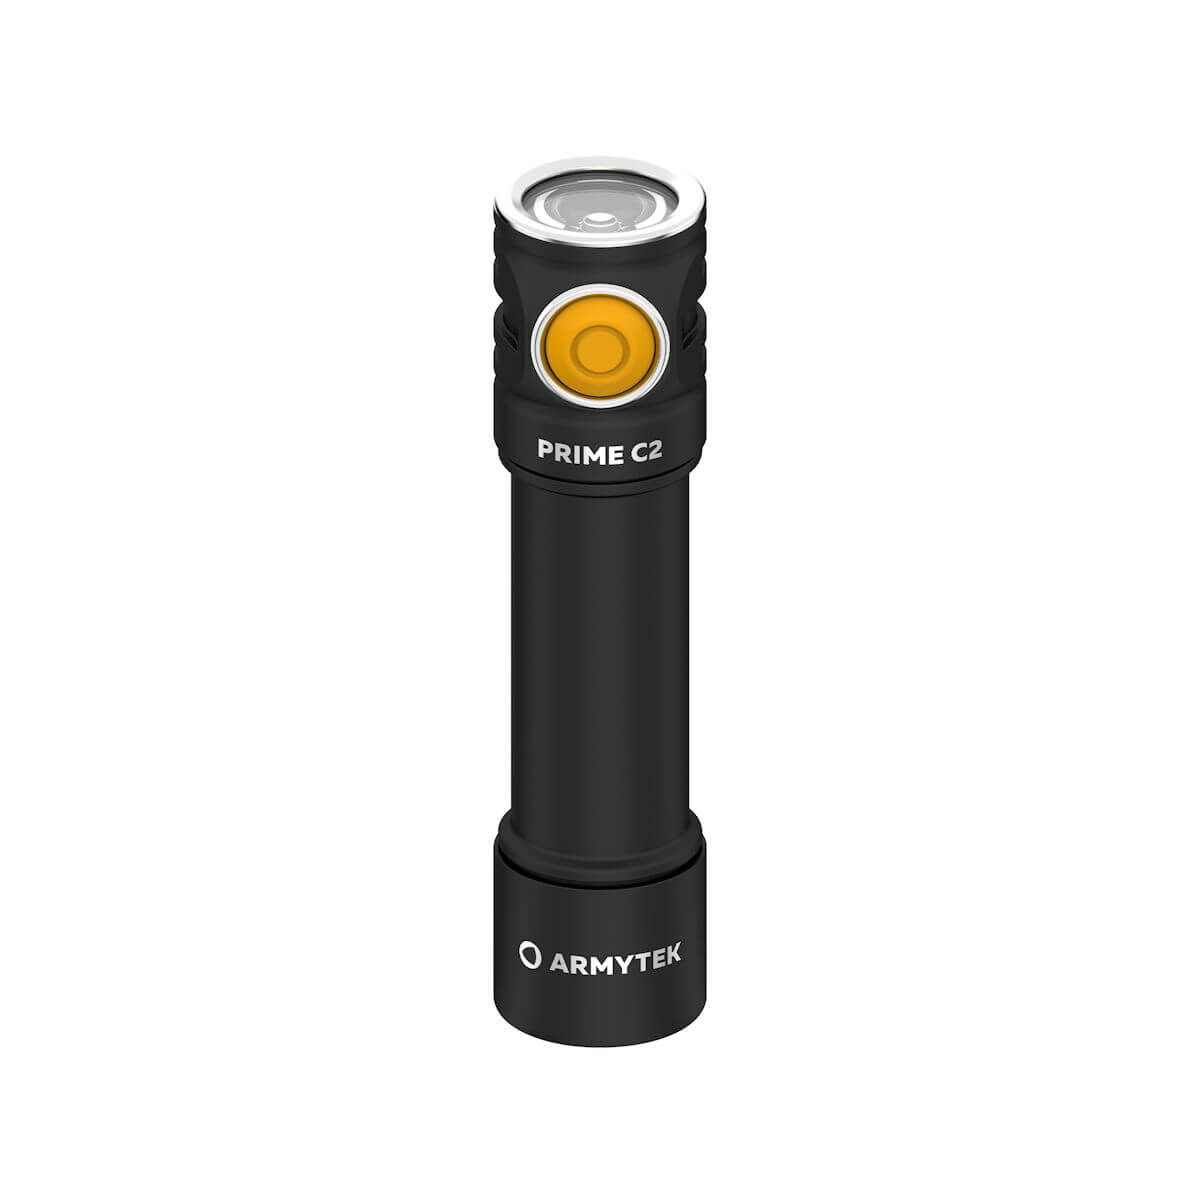 Armytek Prime C2 Magnet LED Taschenlampe mit Akku warmweiss LED-Taschenlampe Taschenlampe